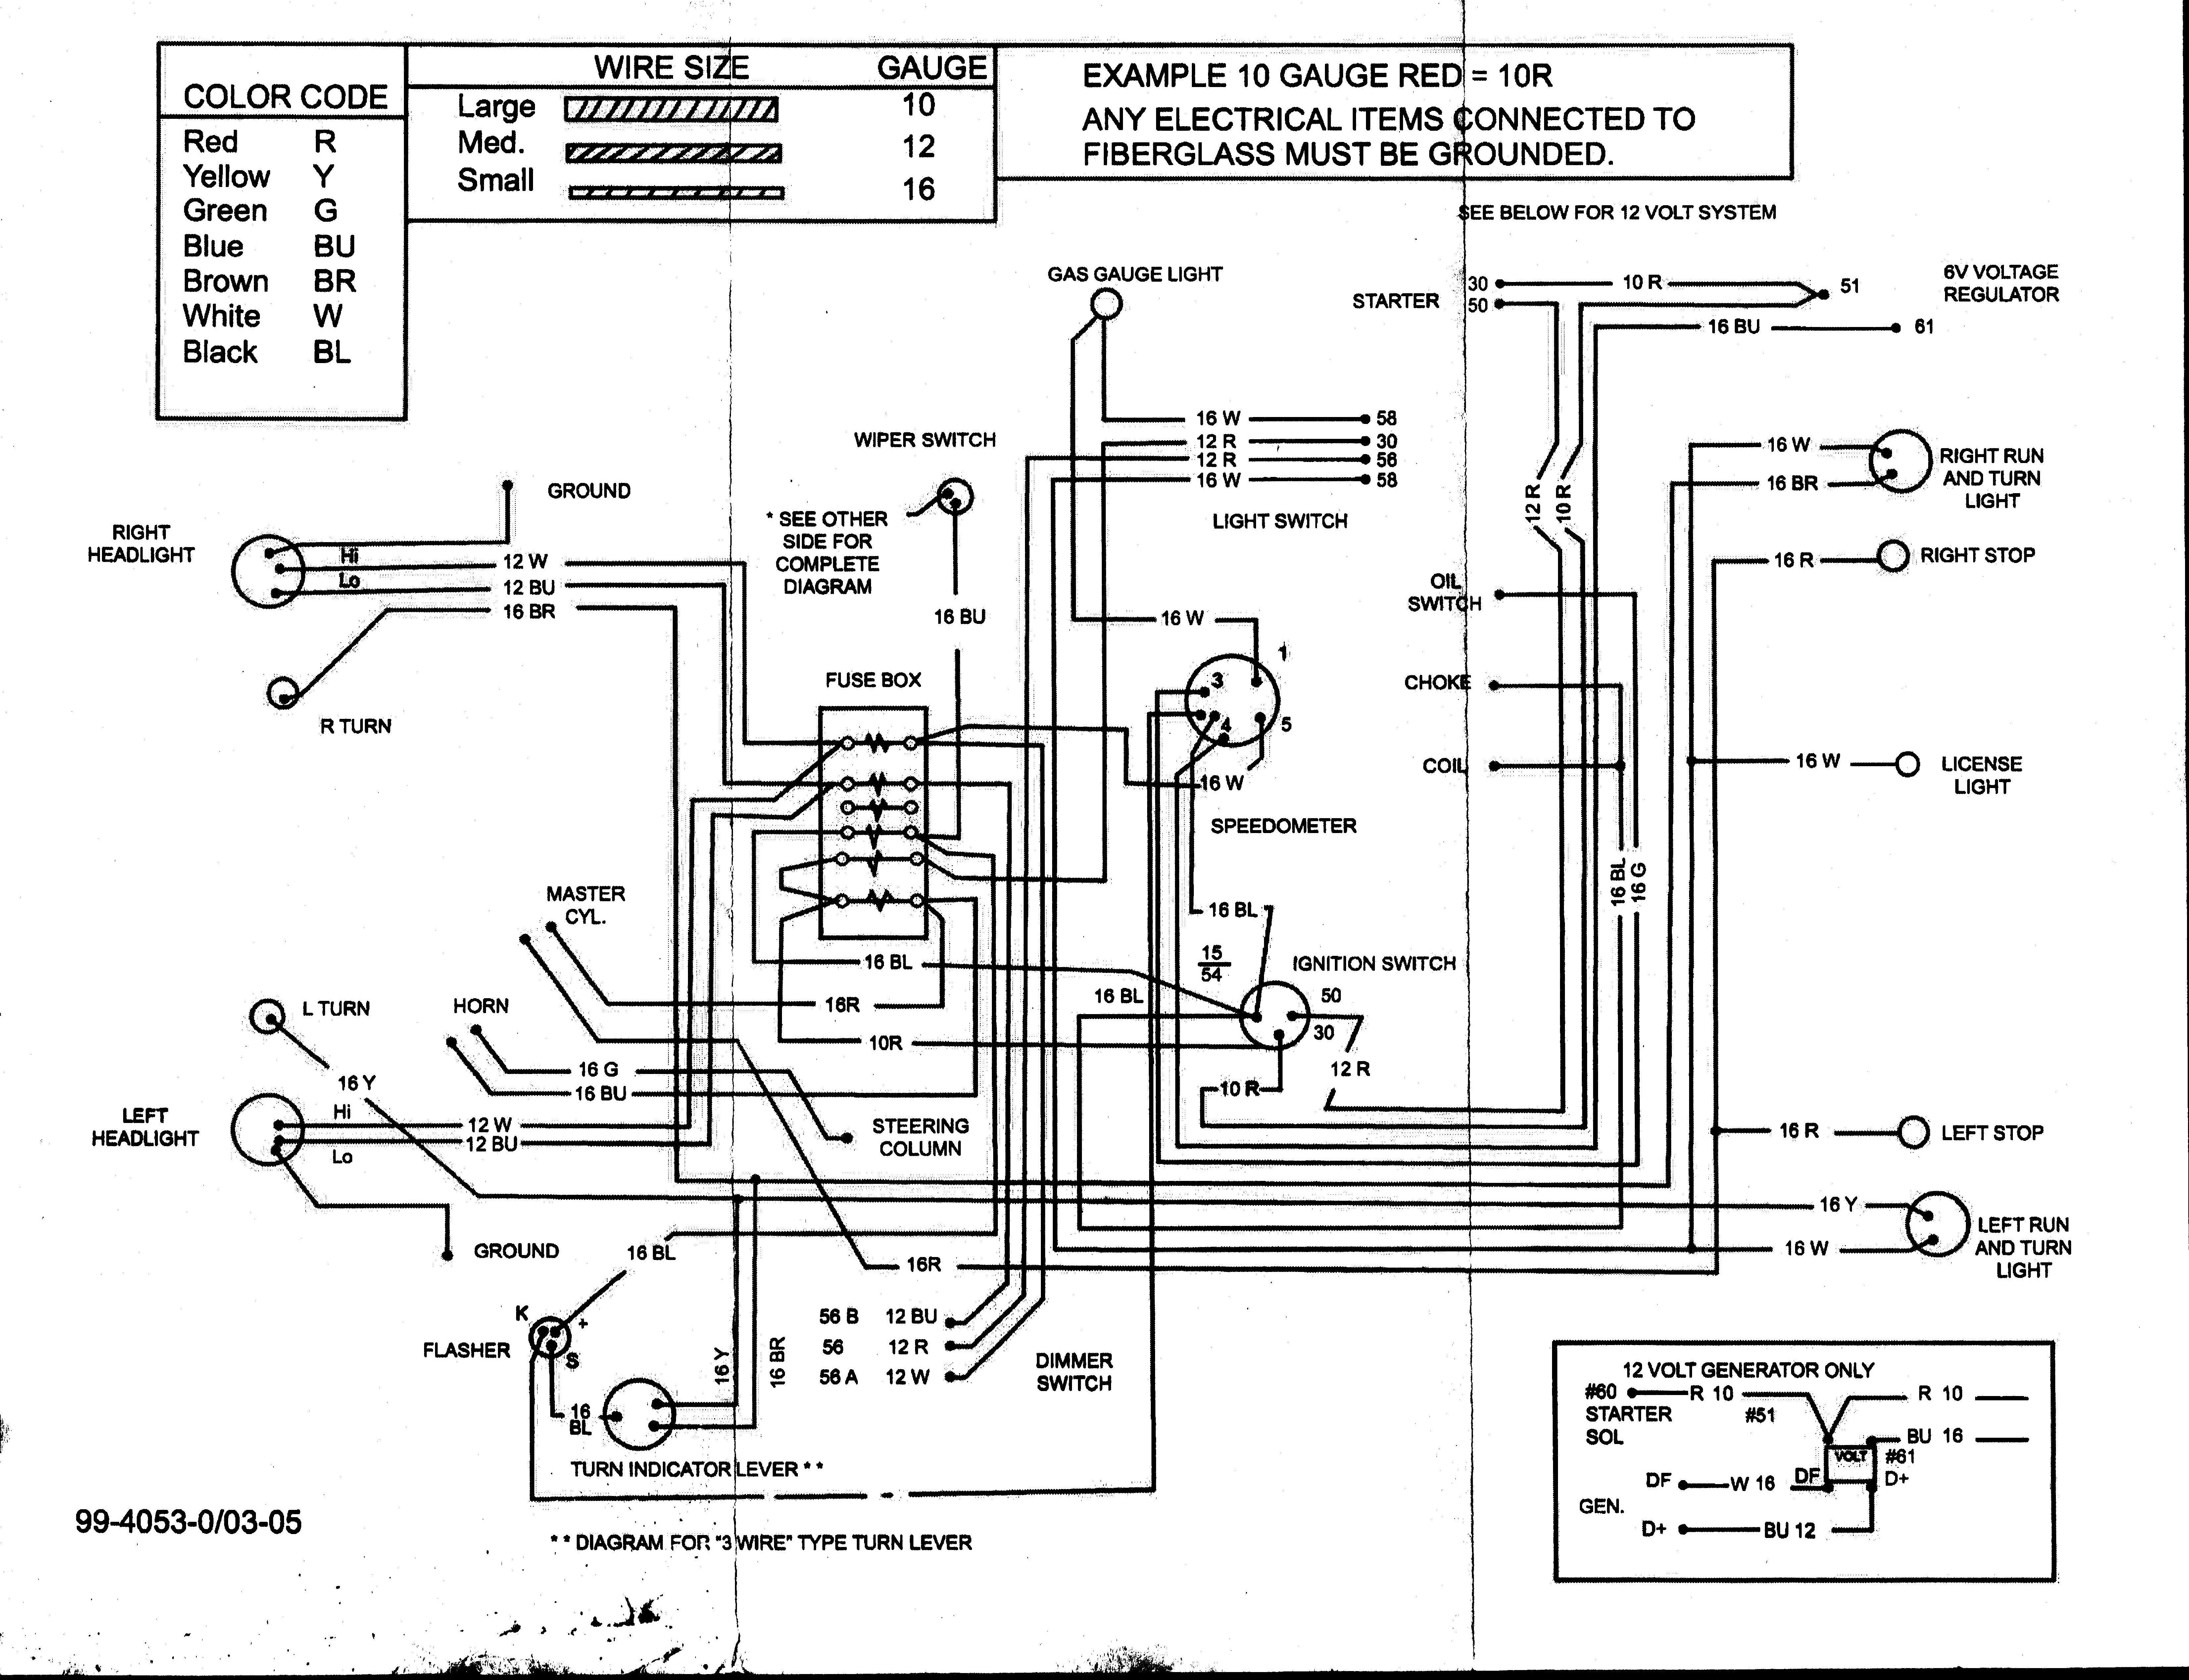 Bad Boy Mowers Wiring Diagram - Schema Wiring Diagram - Bad Boy Wiring Diagram